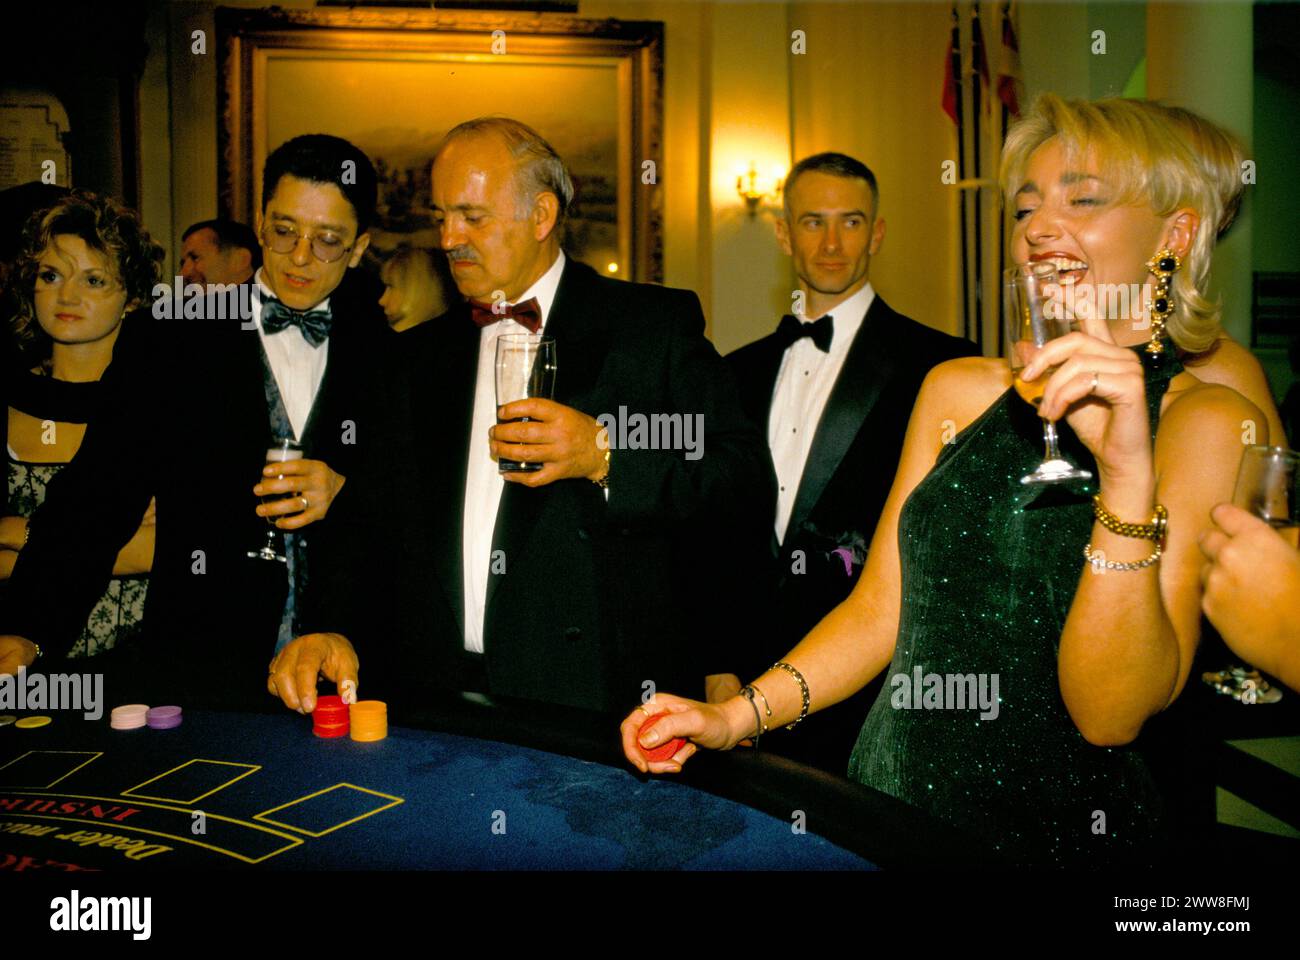 Ricchi inglesi che giocano a blackjack a festa privata di Natale. Giovane donna che fa ridere. Berkshire, Inghilterra circa 1995 dicembre Regno Unito 1990s HOMER SYKES Foto Stock